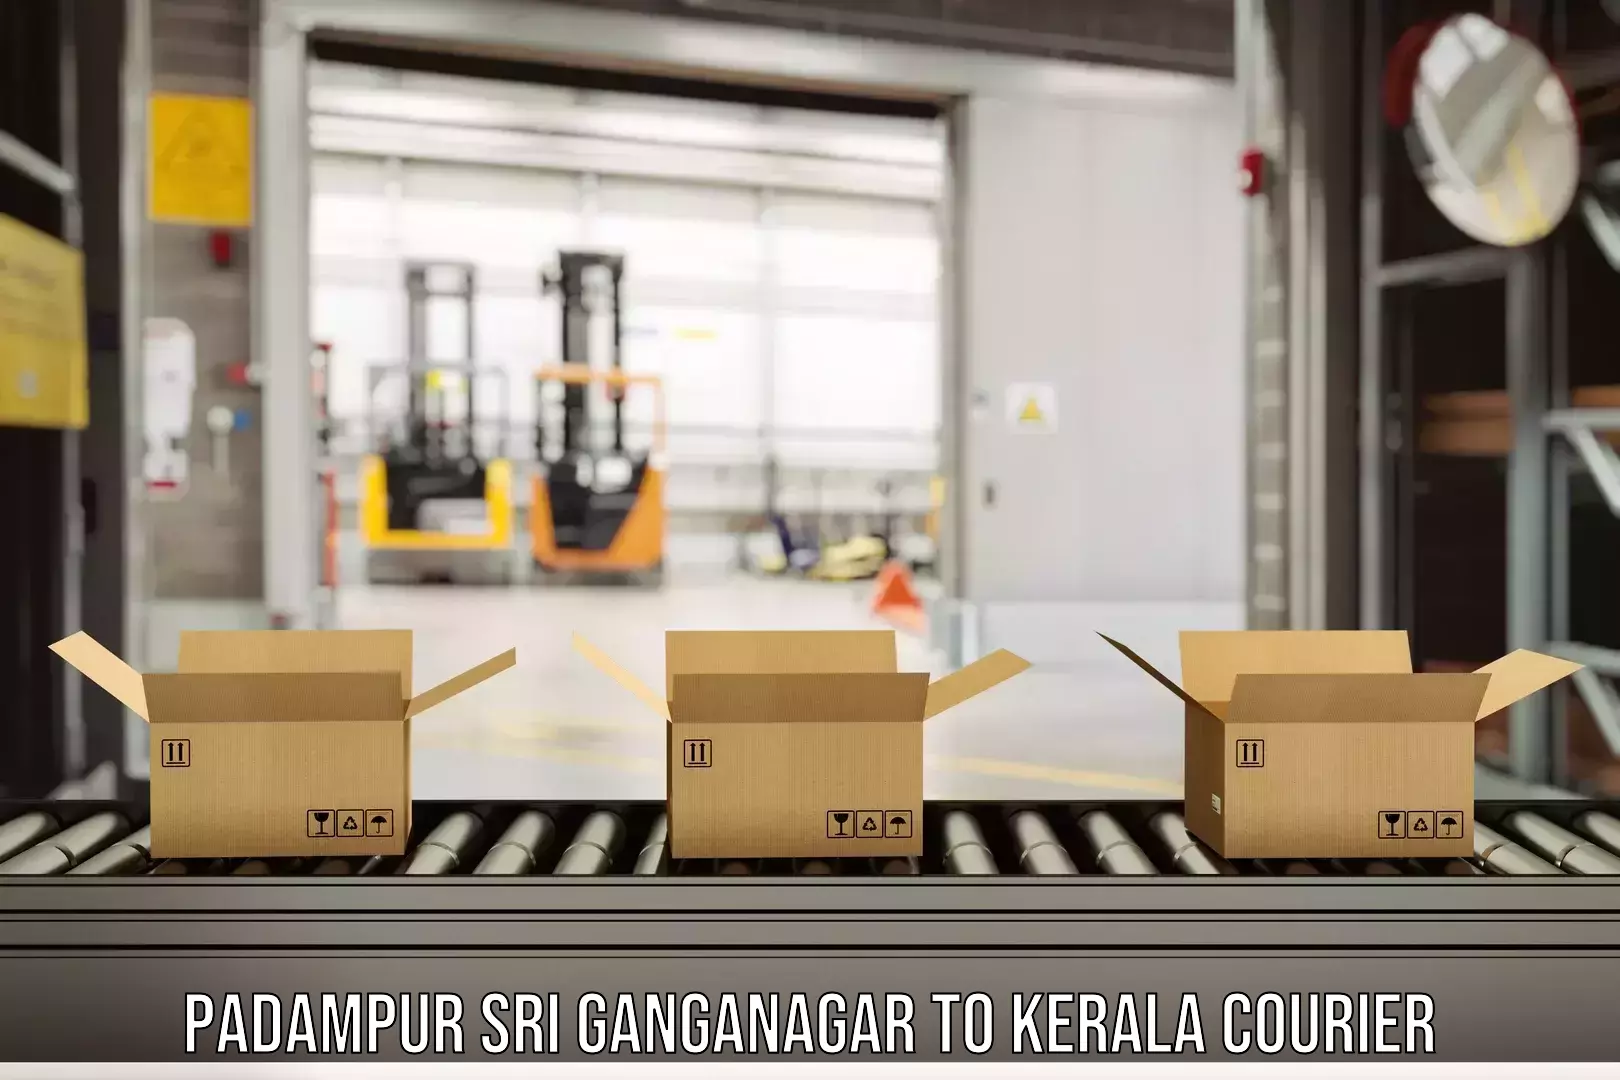 Reliable freight solutions Padampur Sri Ganganagar to Ernakulam